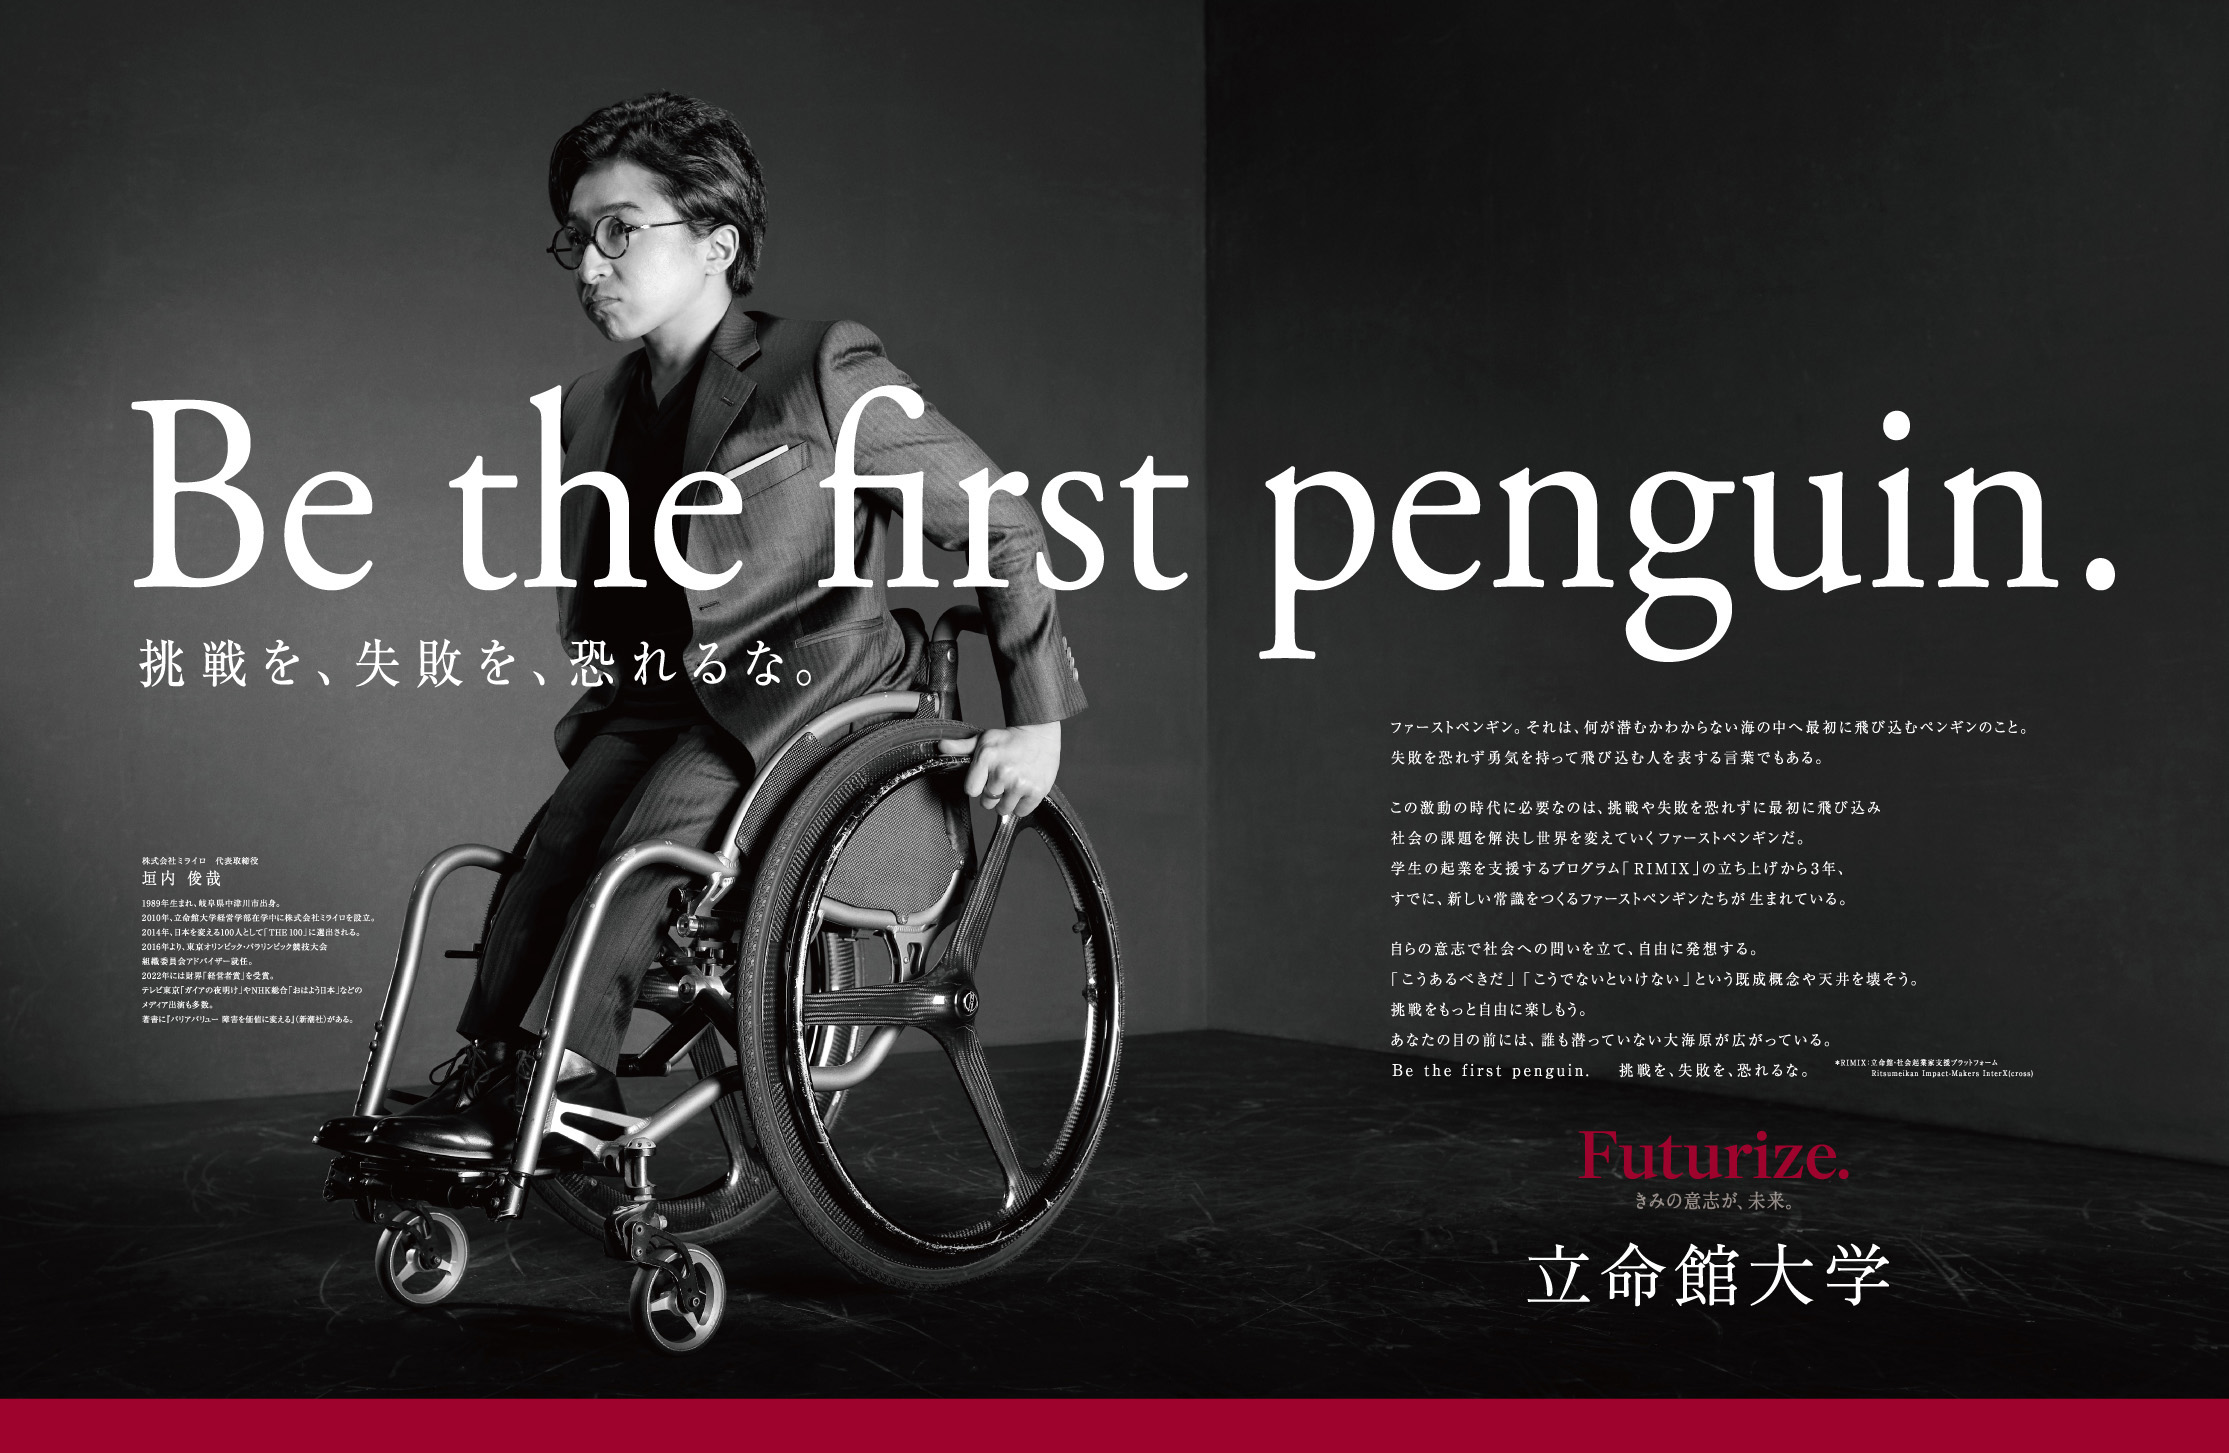 立命館大学の新広告「Be the first penguin. 挑戦を、失敗を、恐れるな